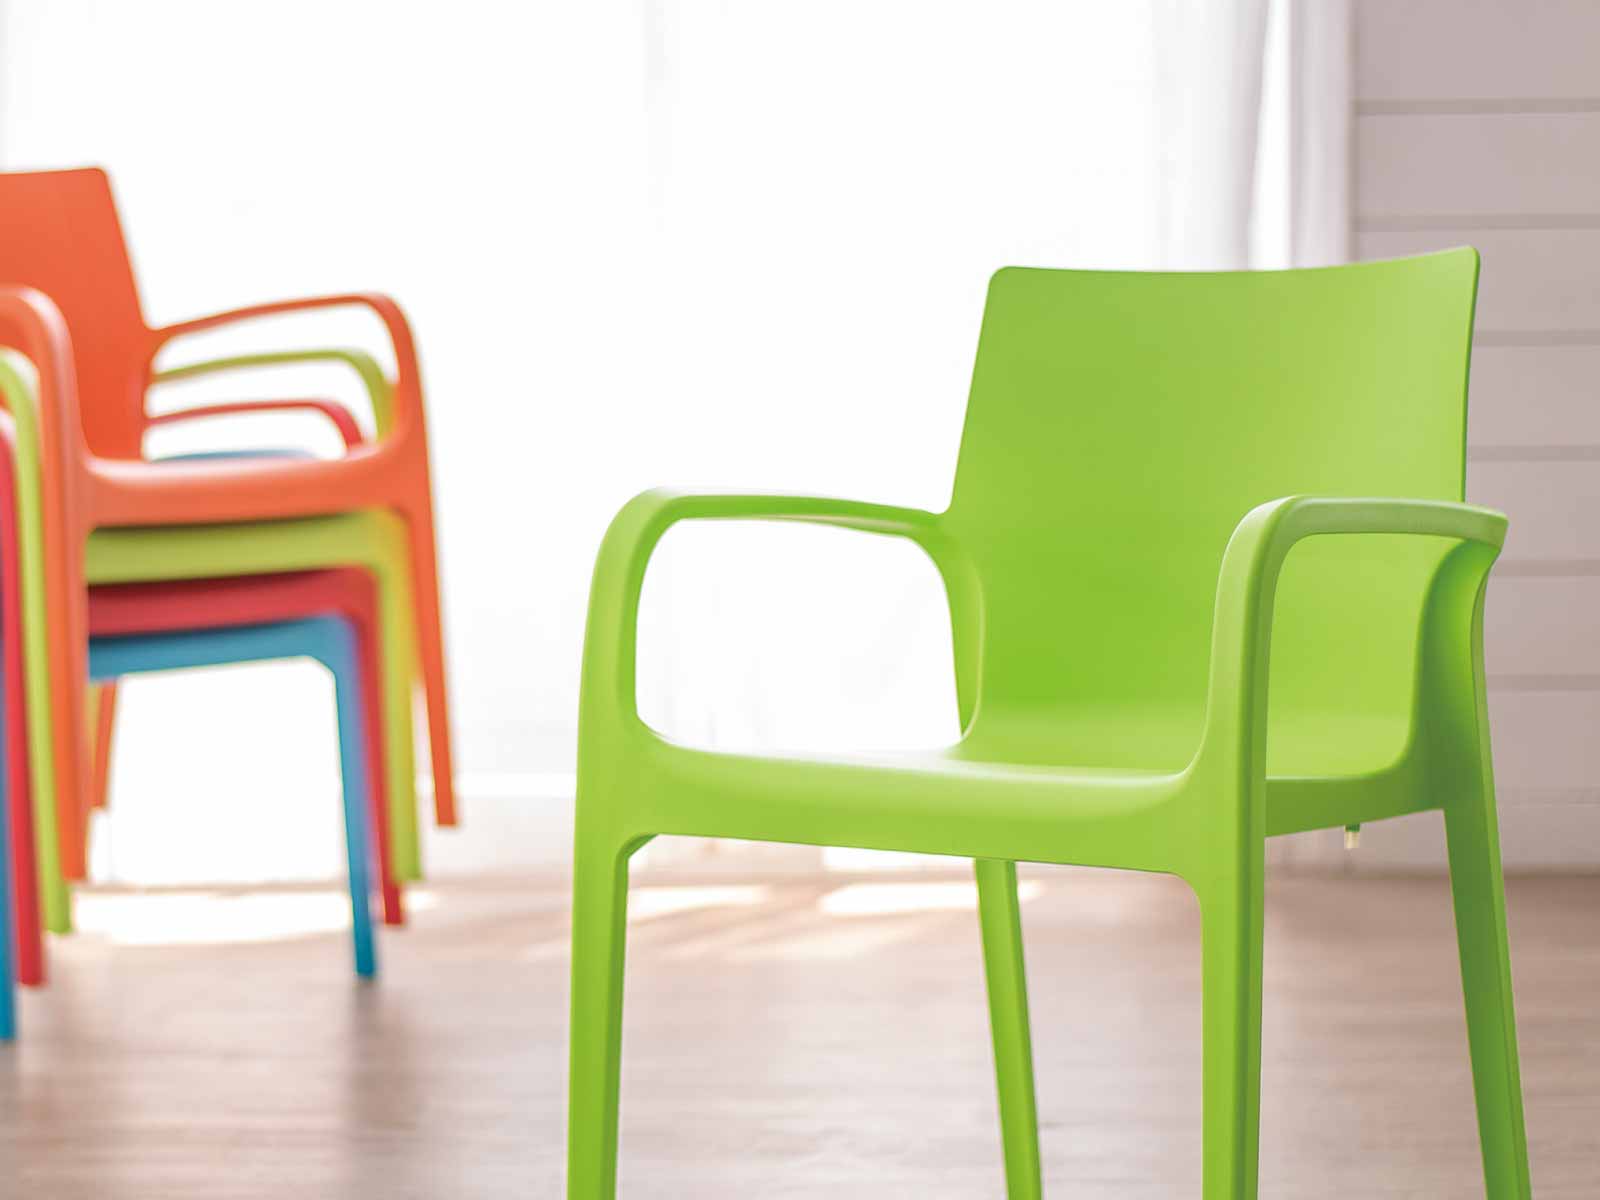 Los colores de los muebles más unificados y firmes.